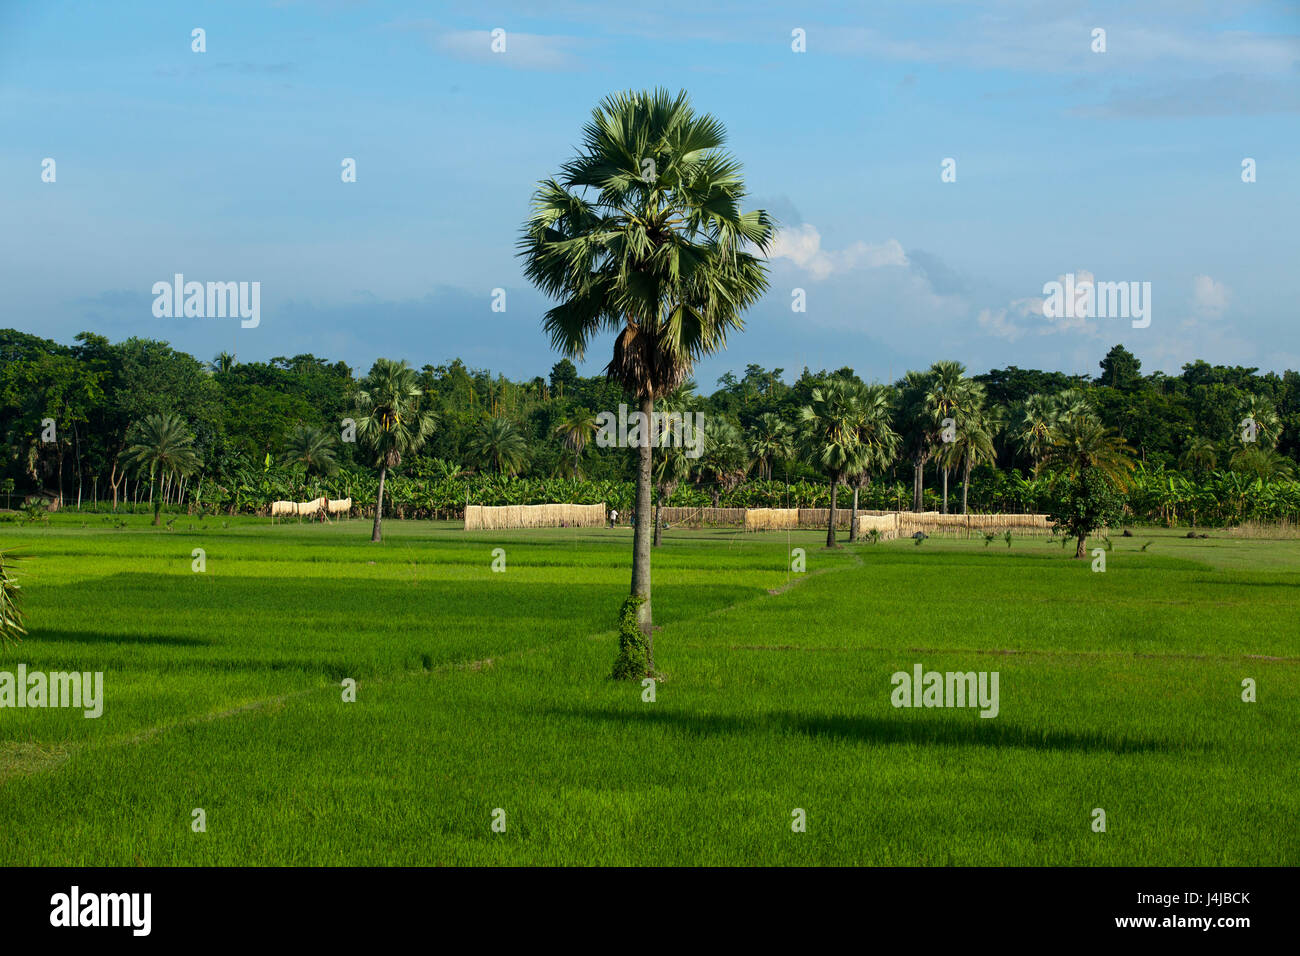 Eine Landschaftsansicht der ländlichen Gegend in Gopalganj, Bangladesch. Stockfoto